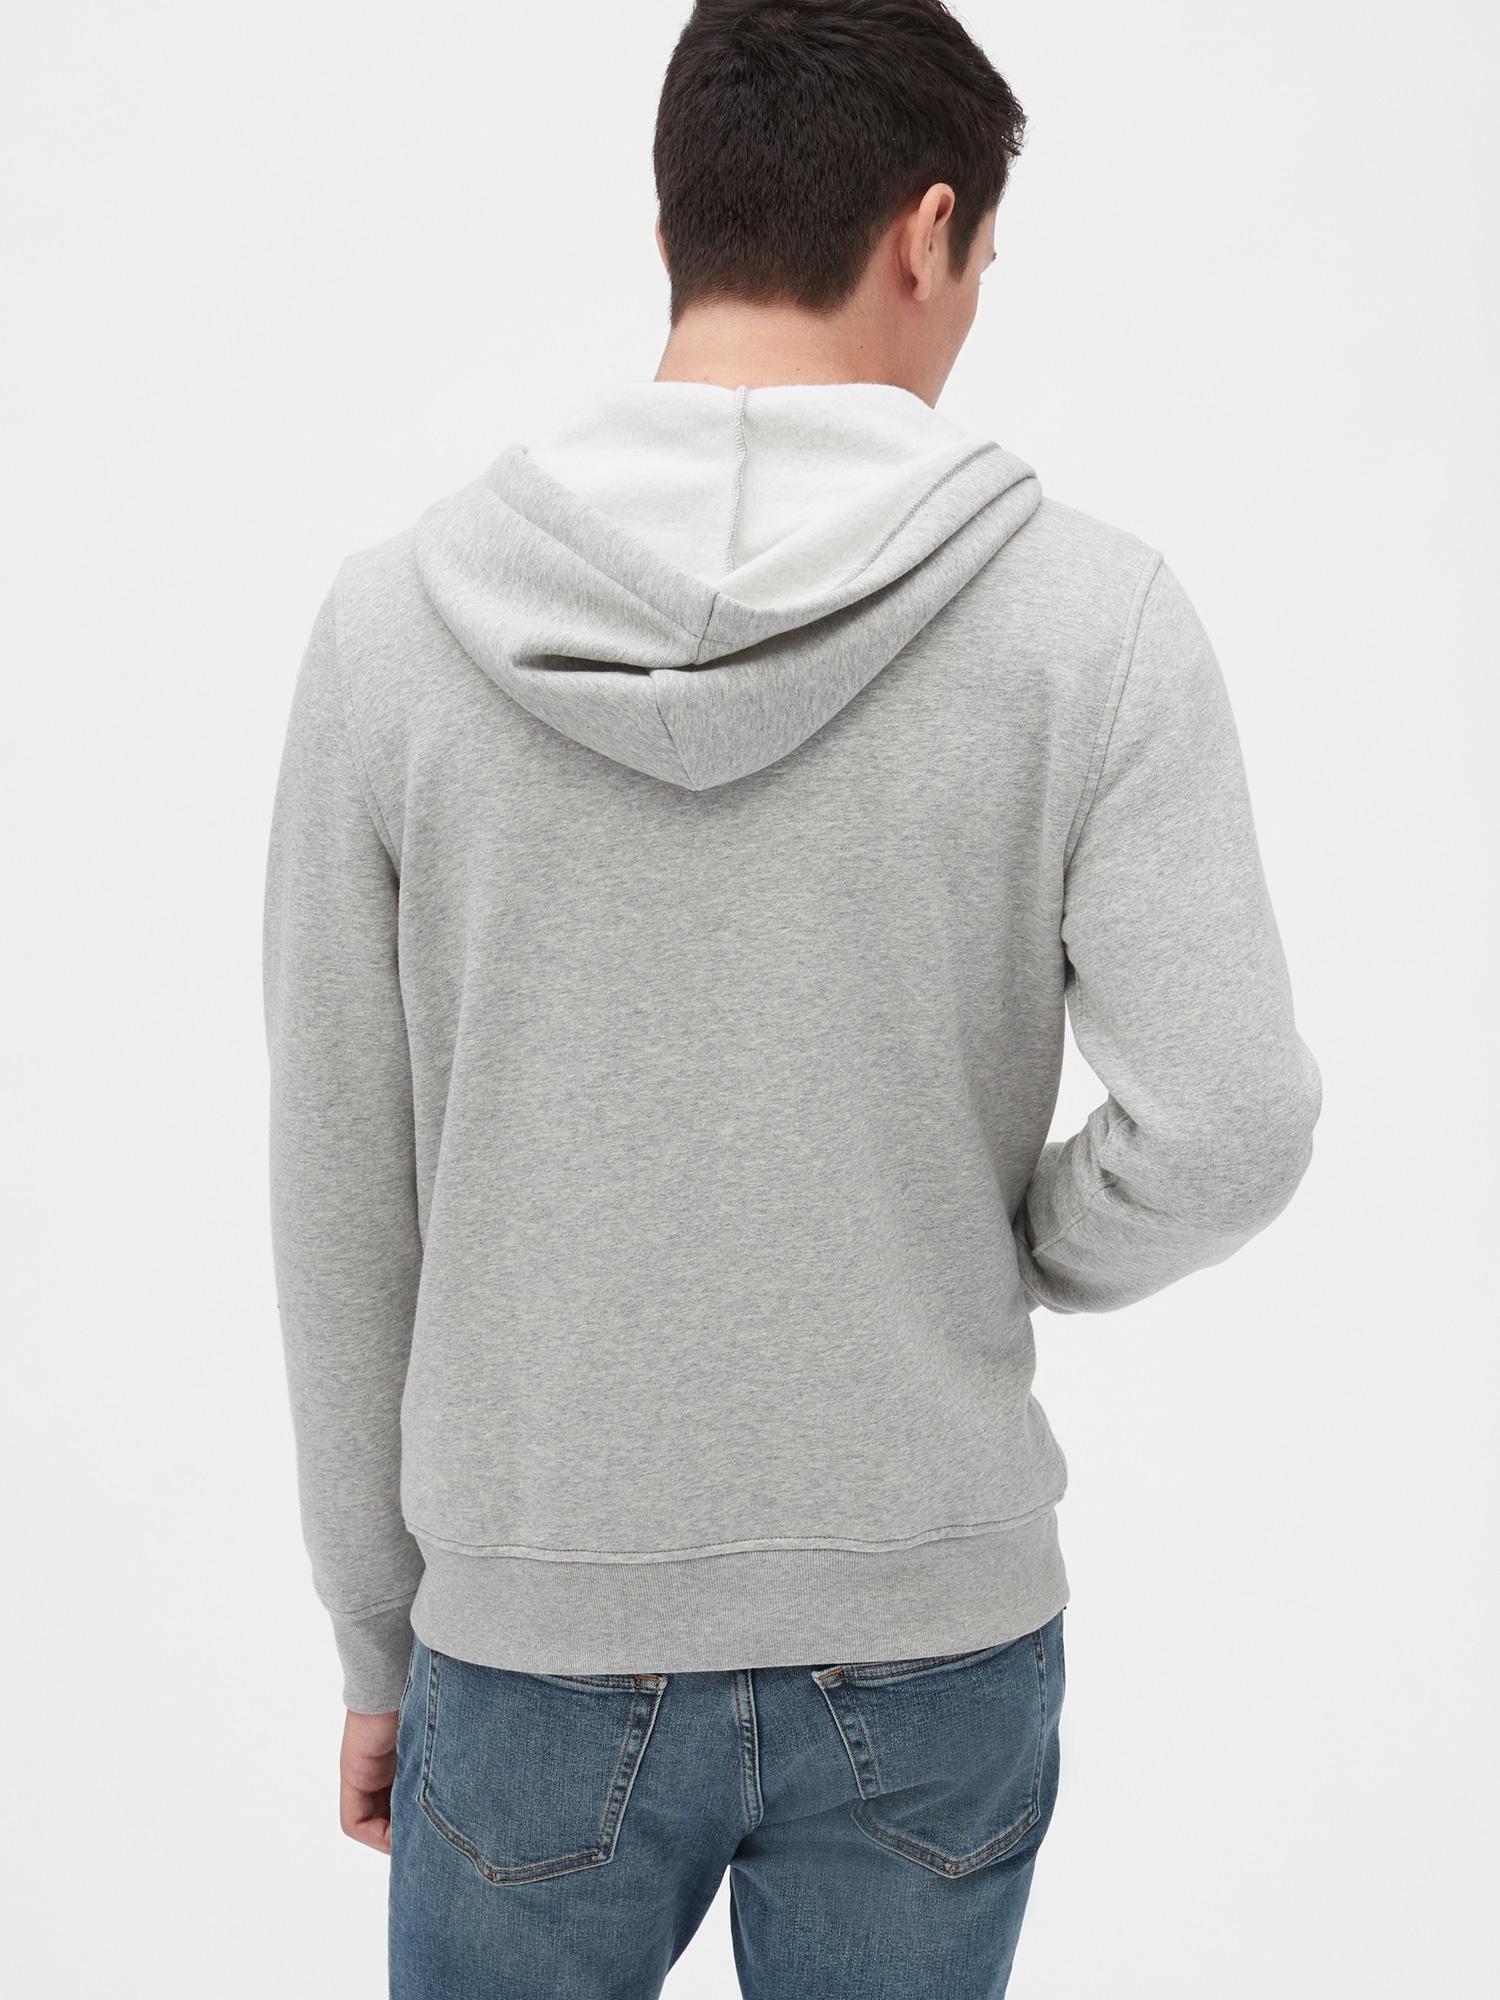 Gap Fleece Logo Full-zip Hoodie in Grey (Gray) for Men - Save 14% - Lyst